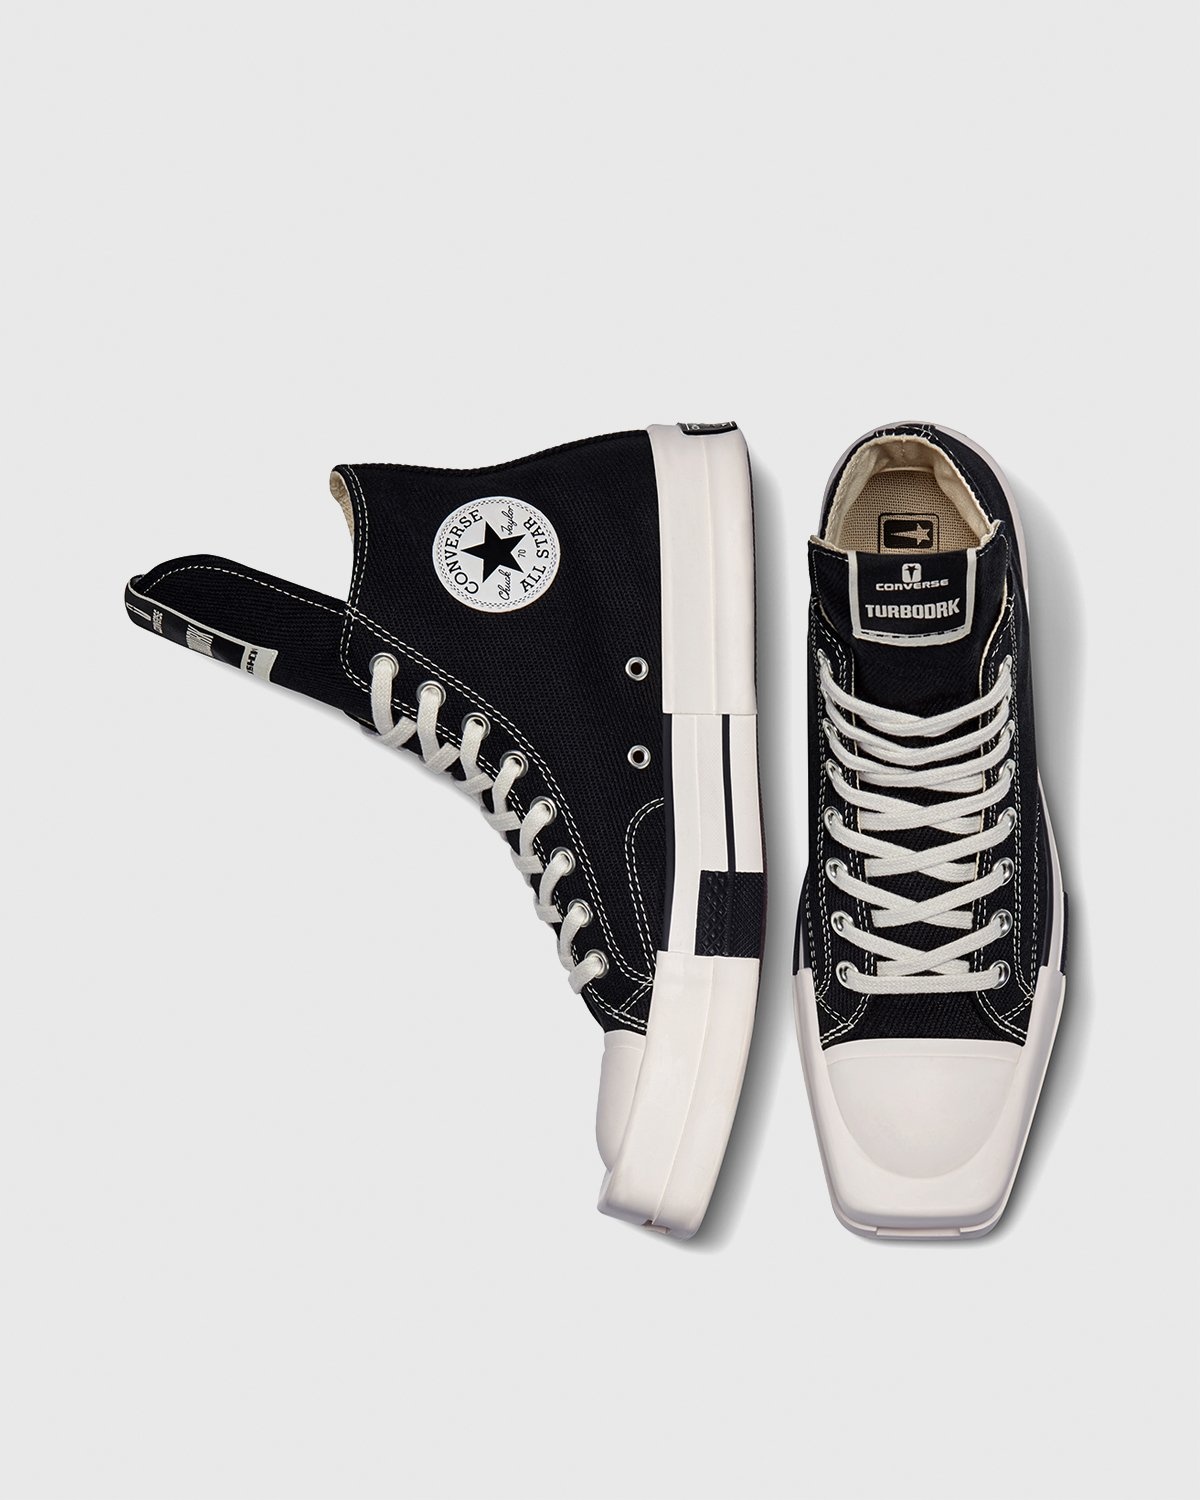 Converse – DRKSHDW TURBODRK Chuck 70 Black - High Top Sneakers - Black - Image 3